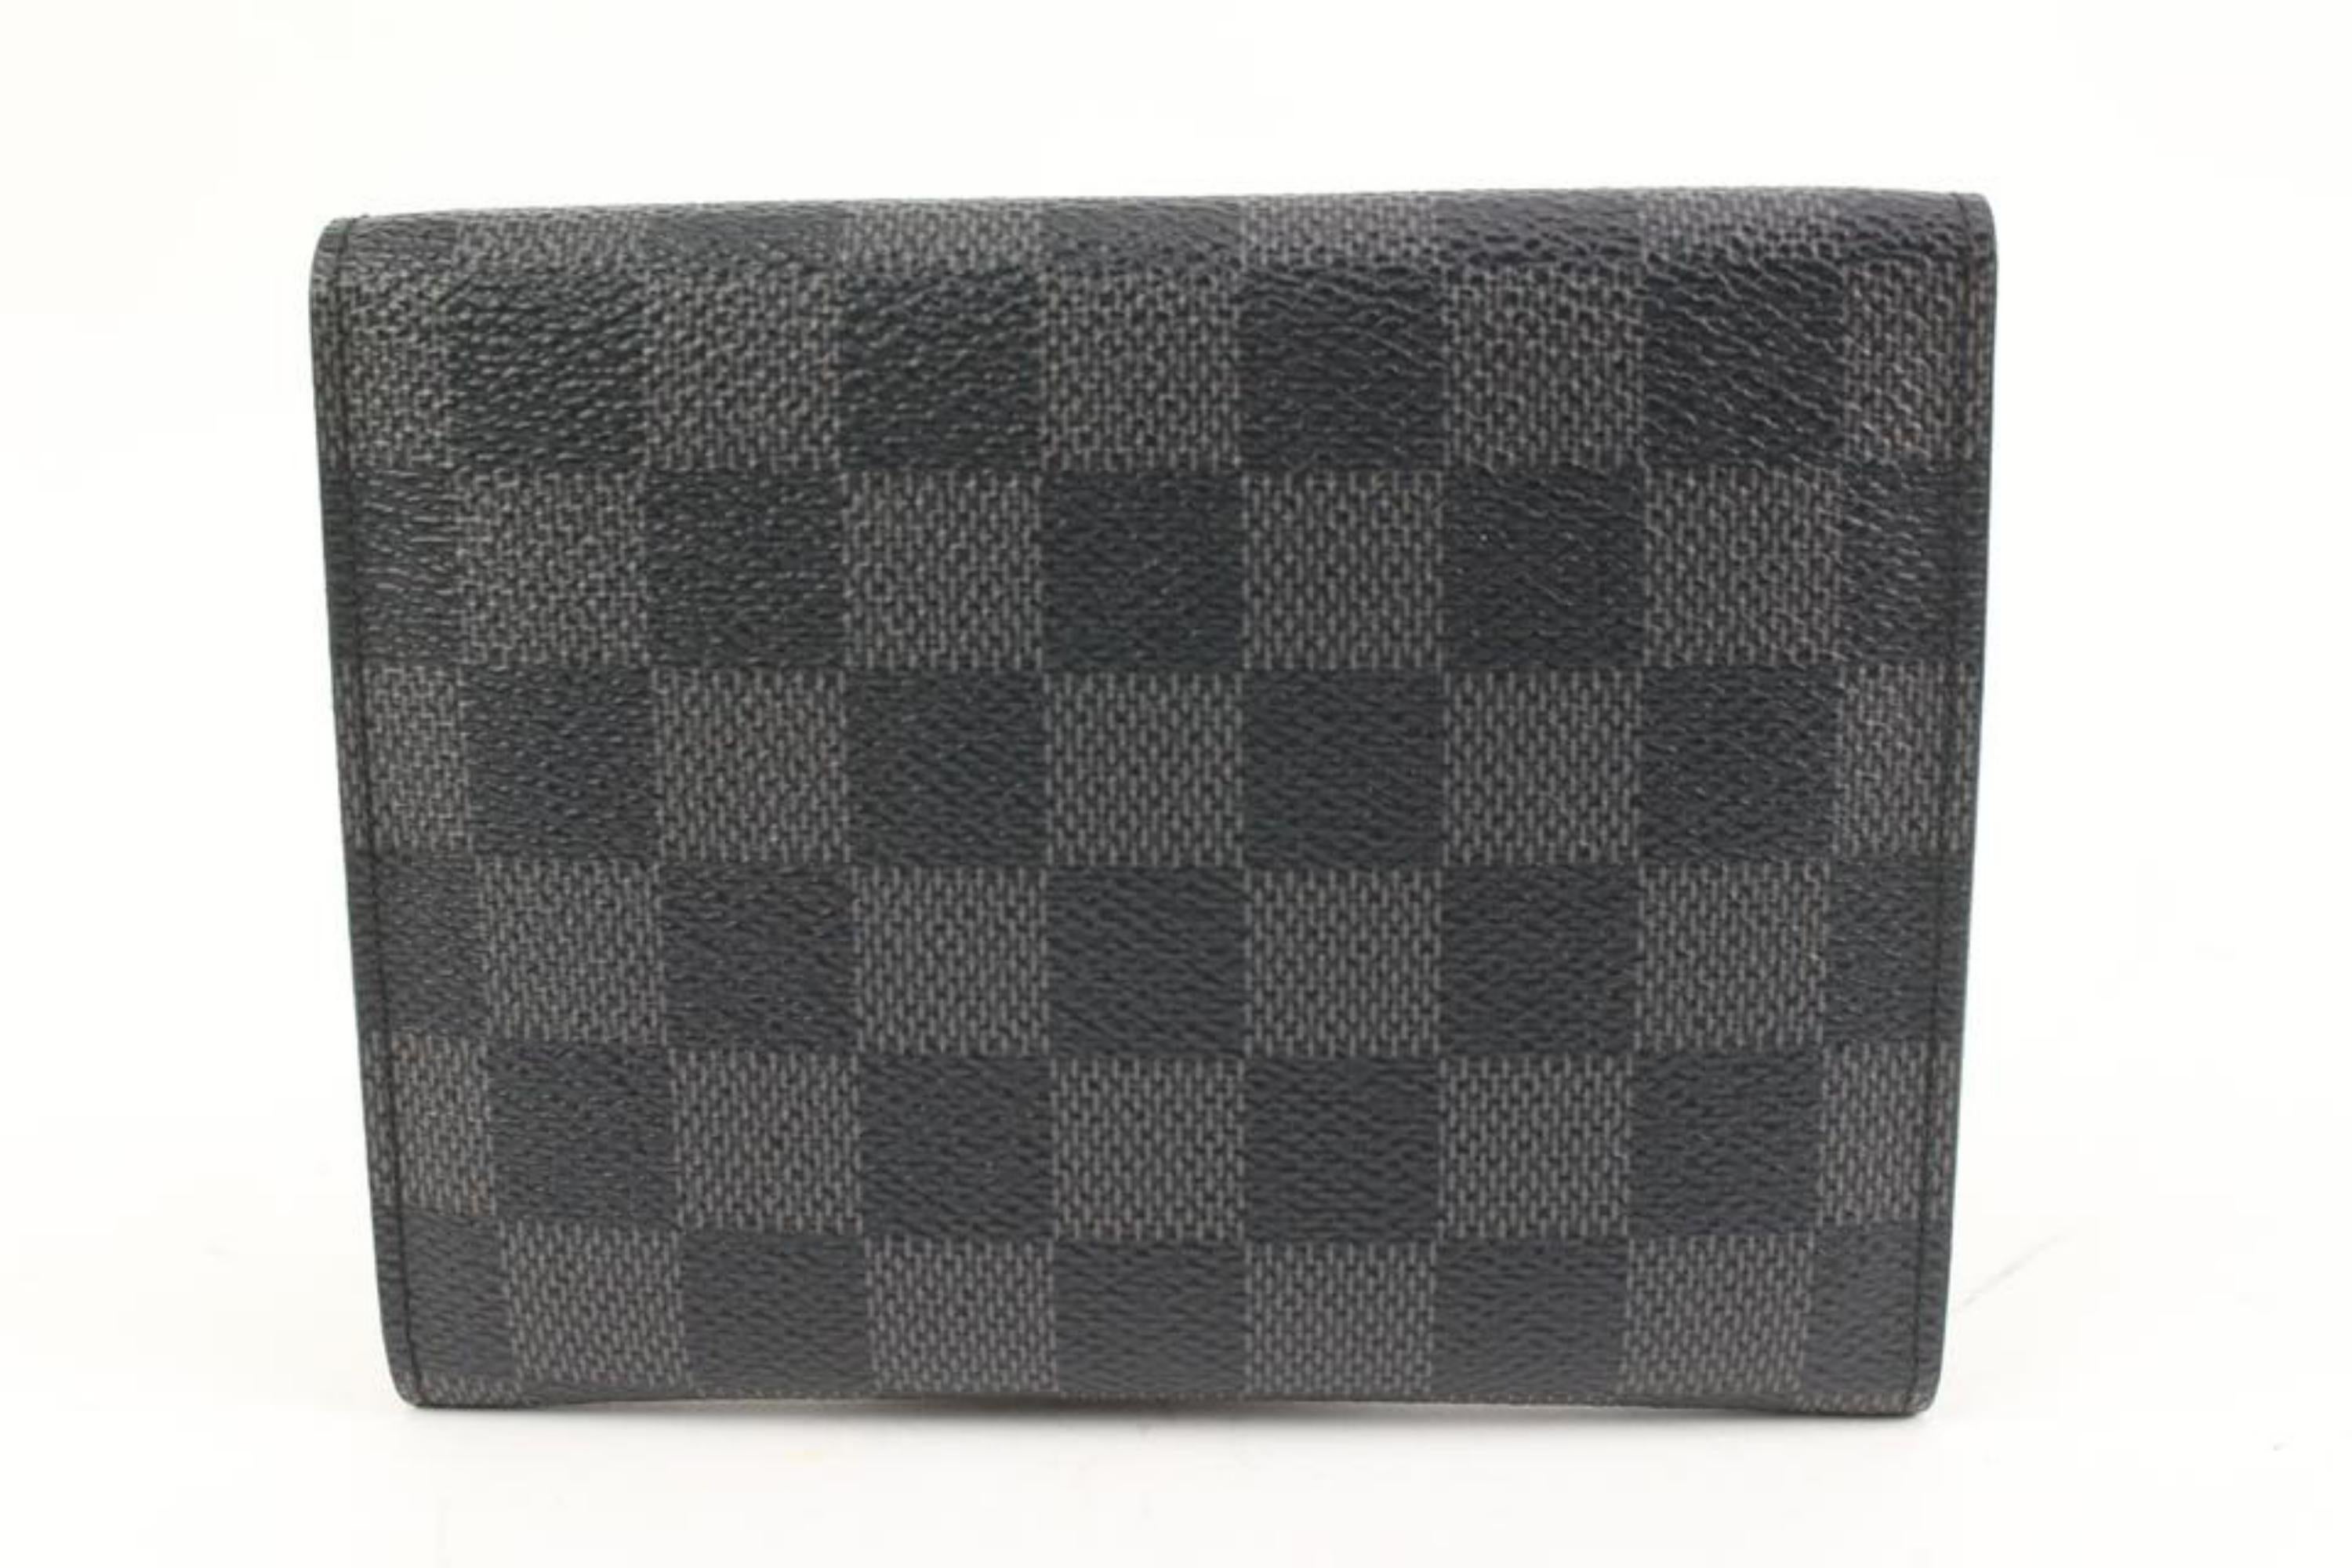 Louis Vuitton Black Damier Graphite Compact Snap Wallet 2lk318s For Sale 2